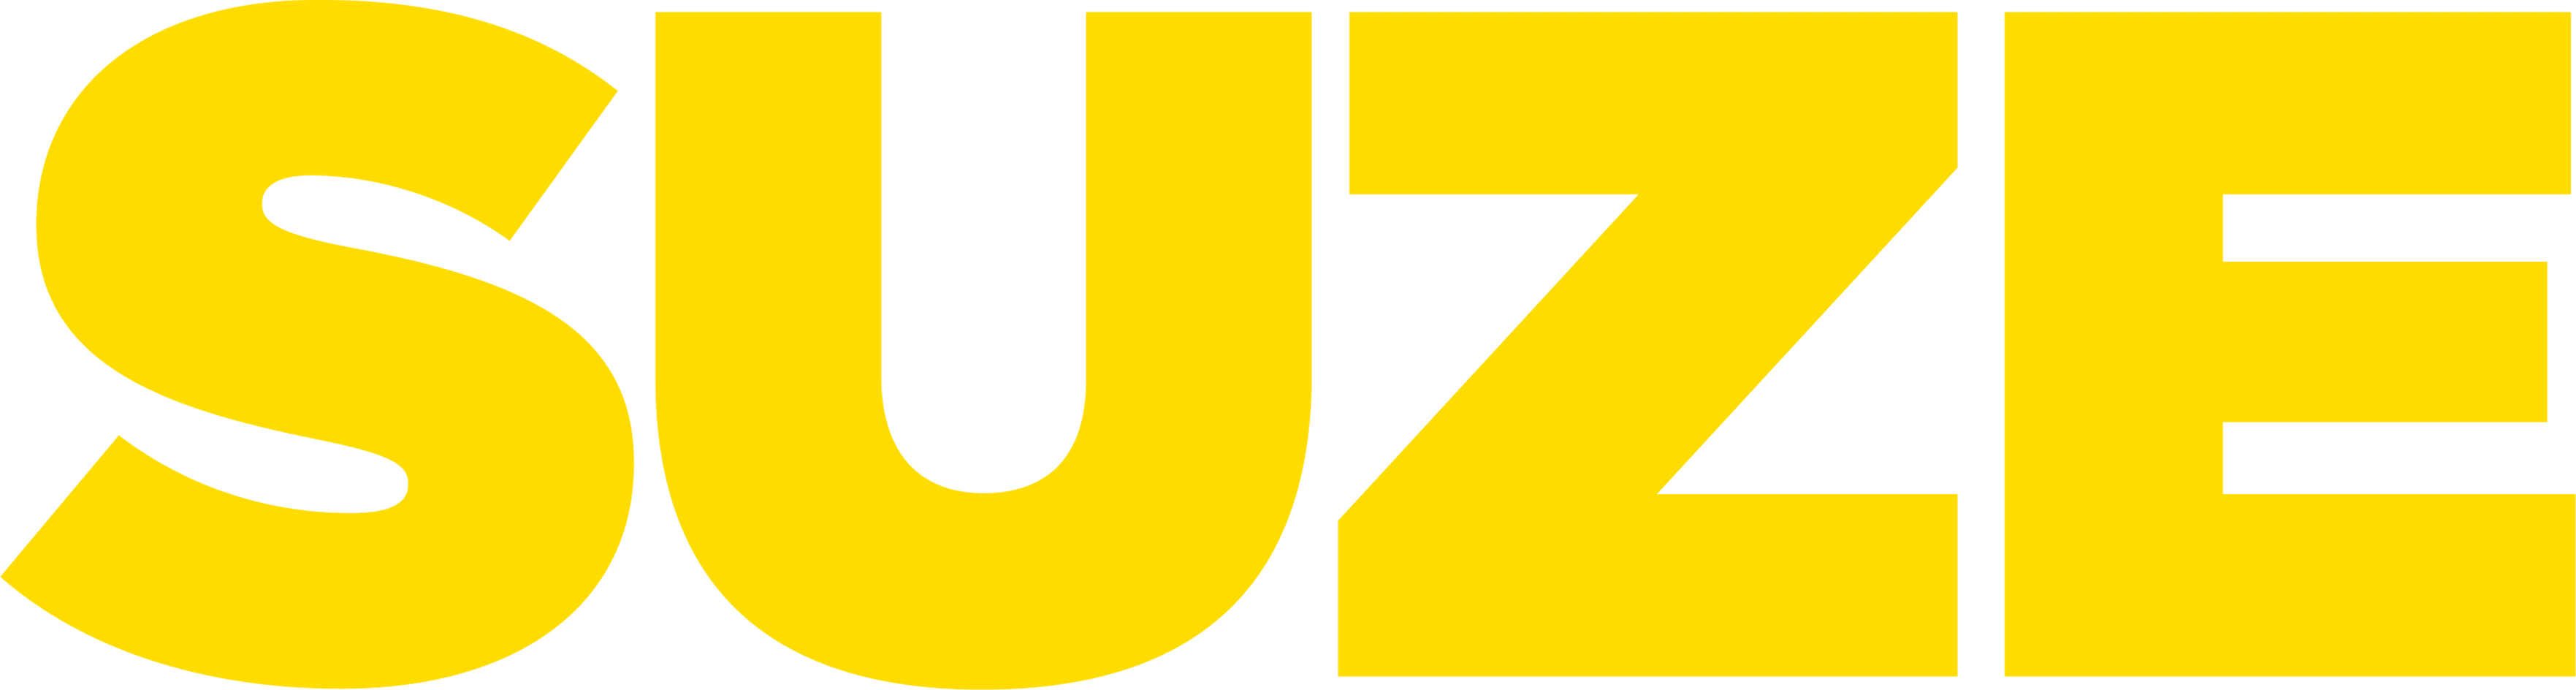 Suze logo